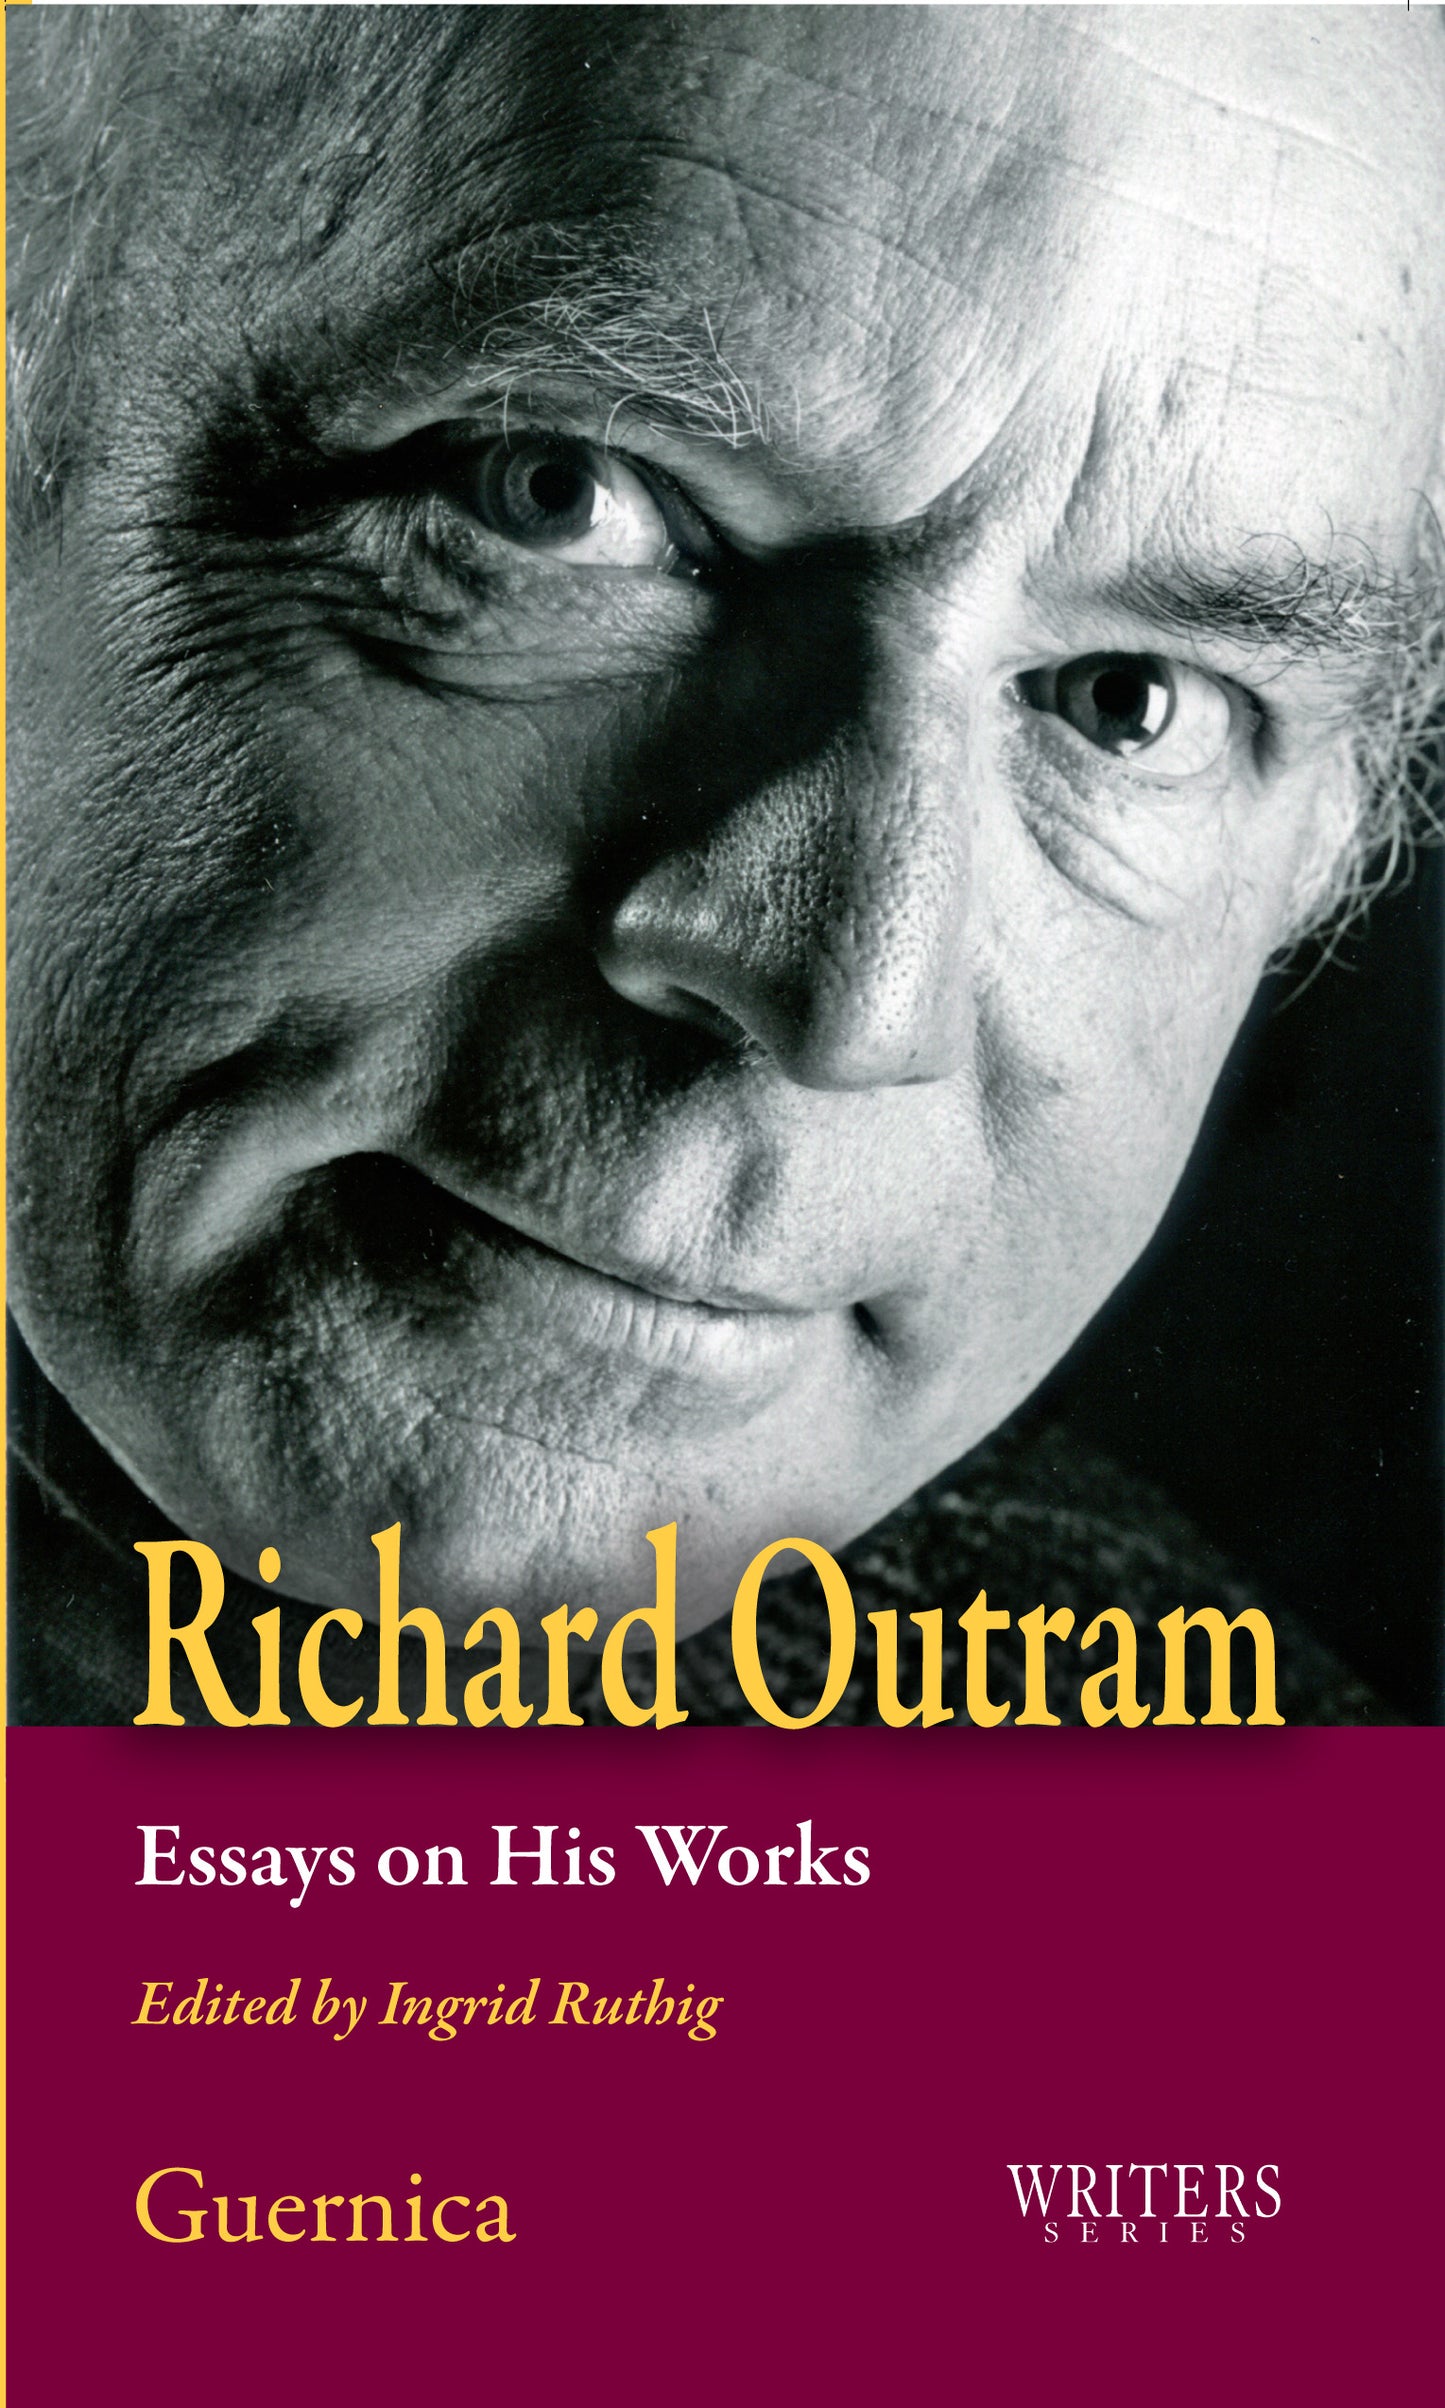 Richard Outram